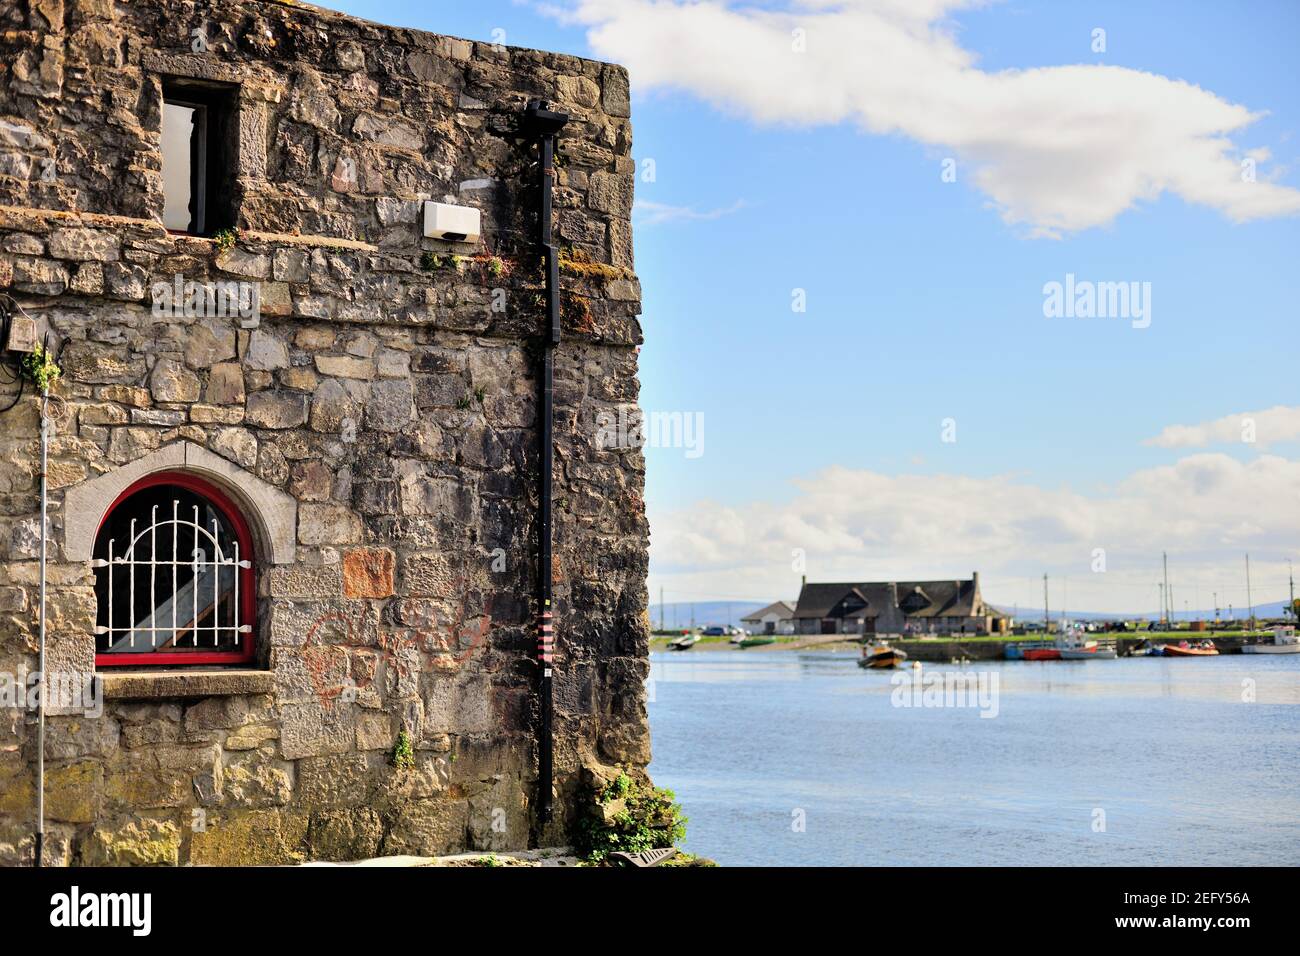 Galway, County Galway, Irland. Ein Abschnitt des Spanischen Tores, der sich bis zur Galway Bay erstreckt. Das Tor wurde 1584 erbaut. Stockfoto